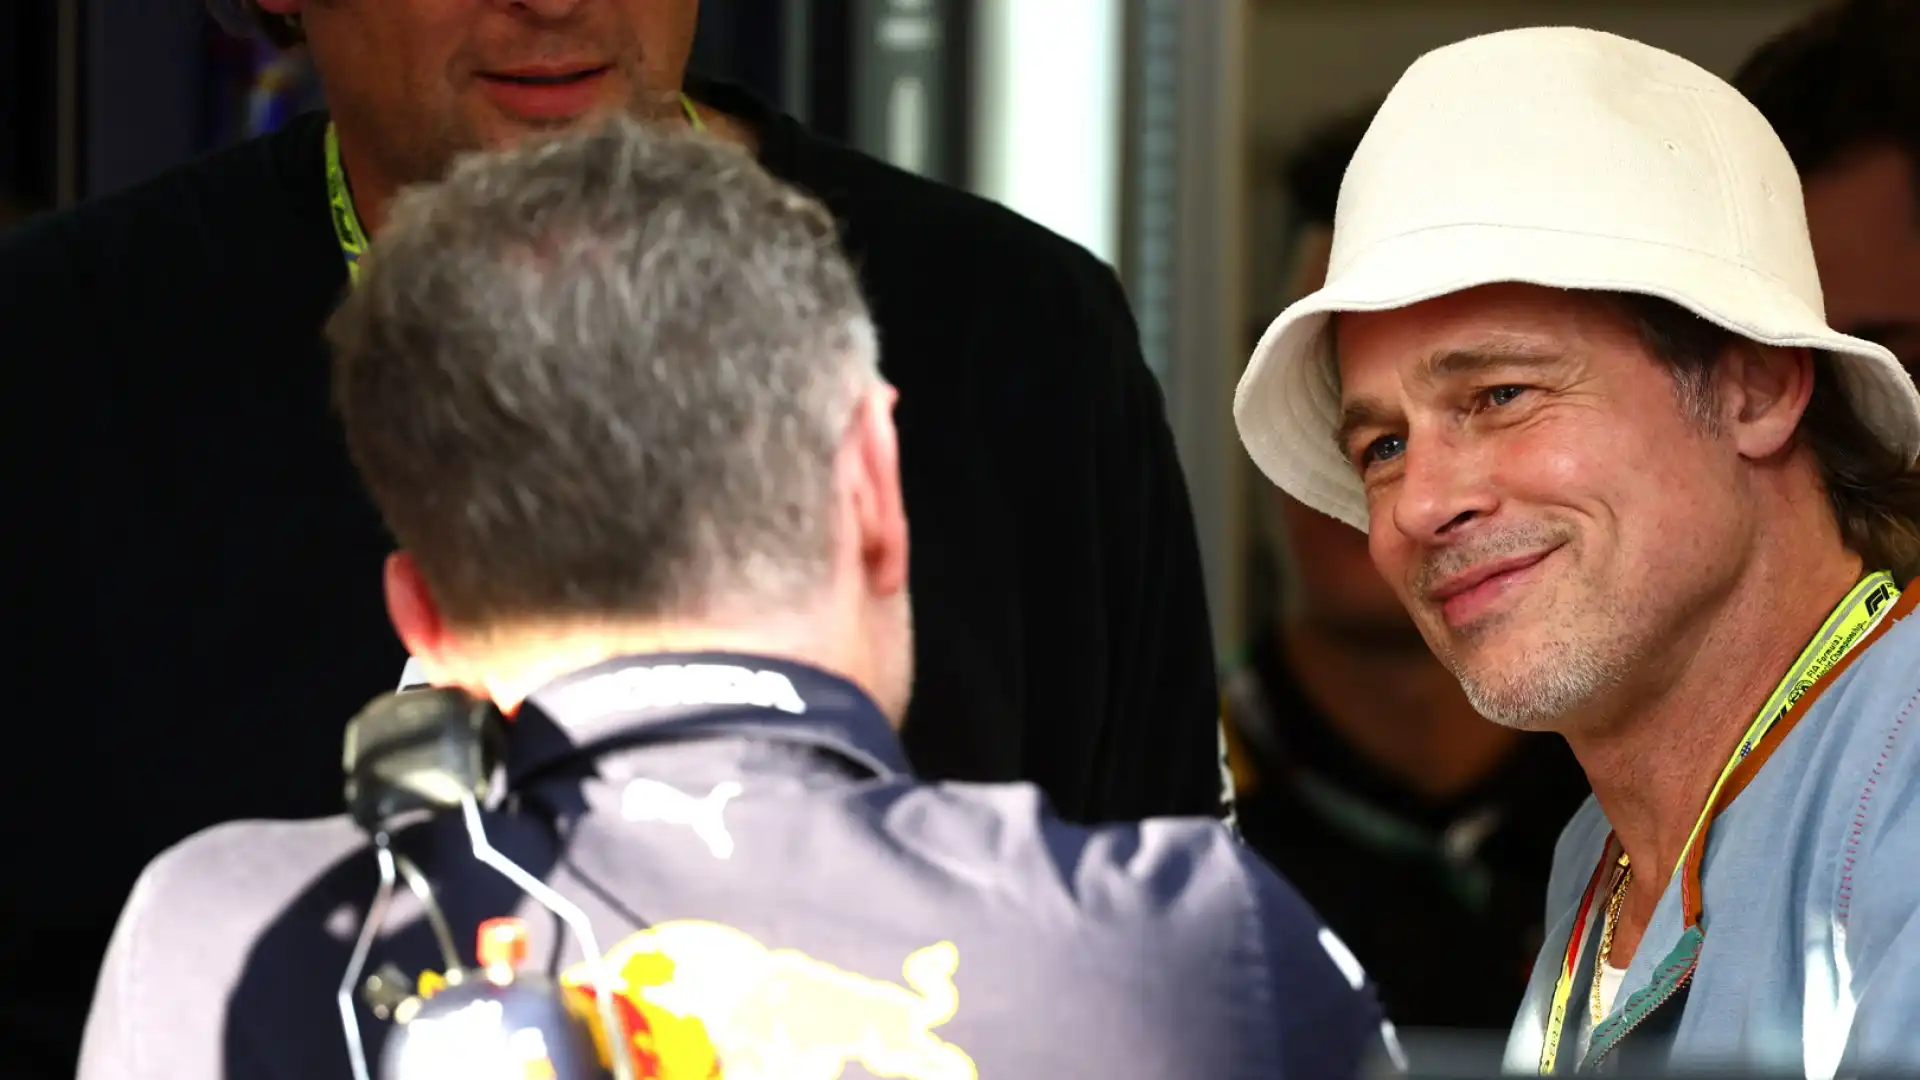 L'attore si è anche soffermato a parlare con il team principal della Red Bull Christian Horner